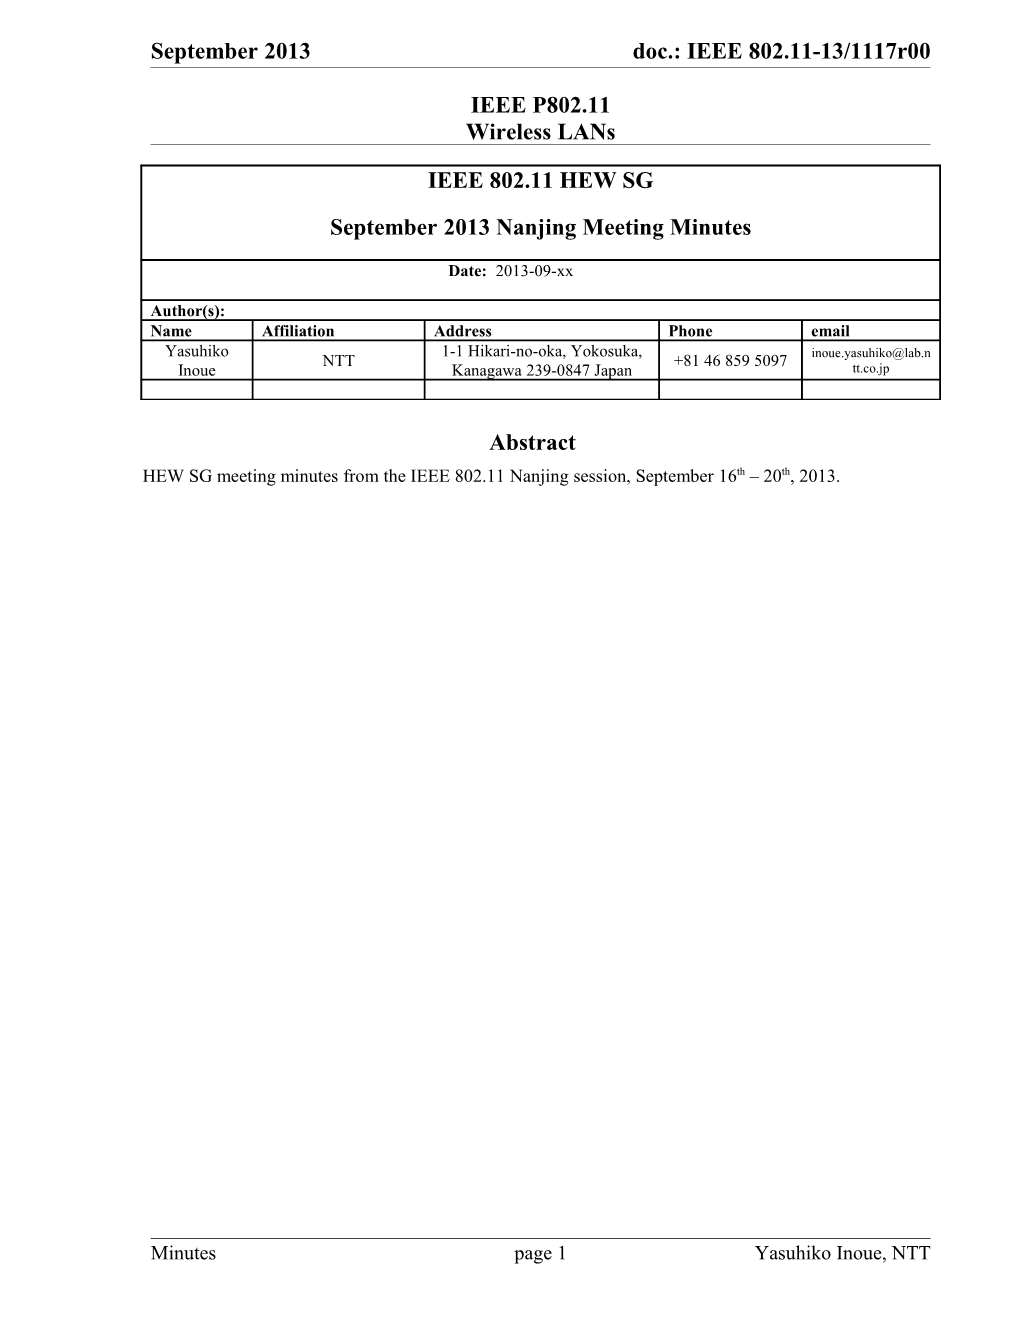 September 2013 Doc.: IEEE 802.11-13/11178Oc.: IEEE 802.11-13/0388Rr0